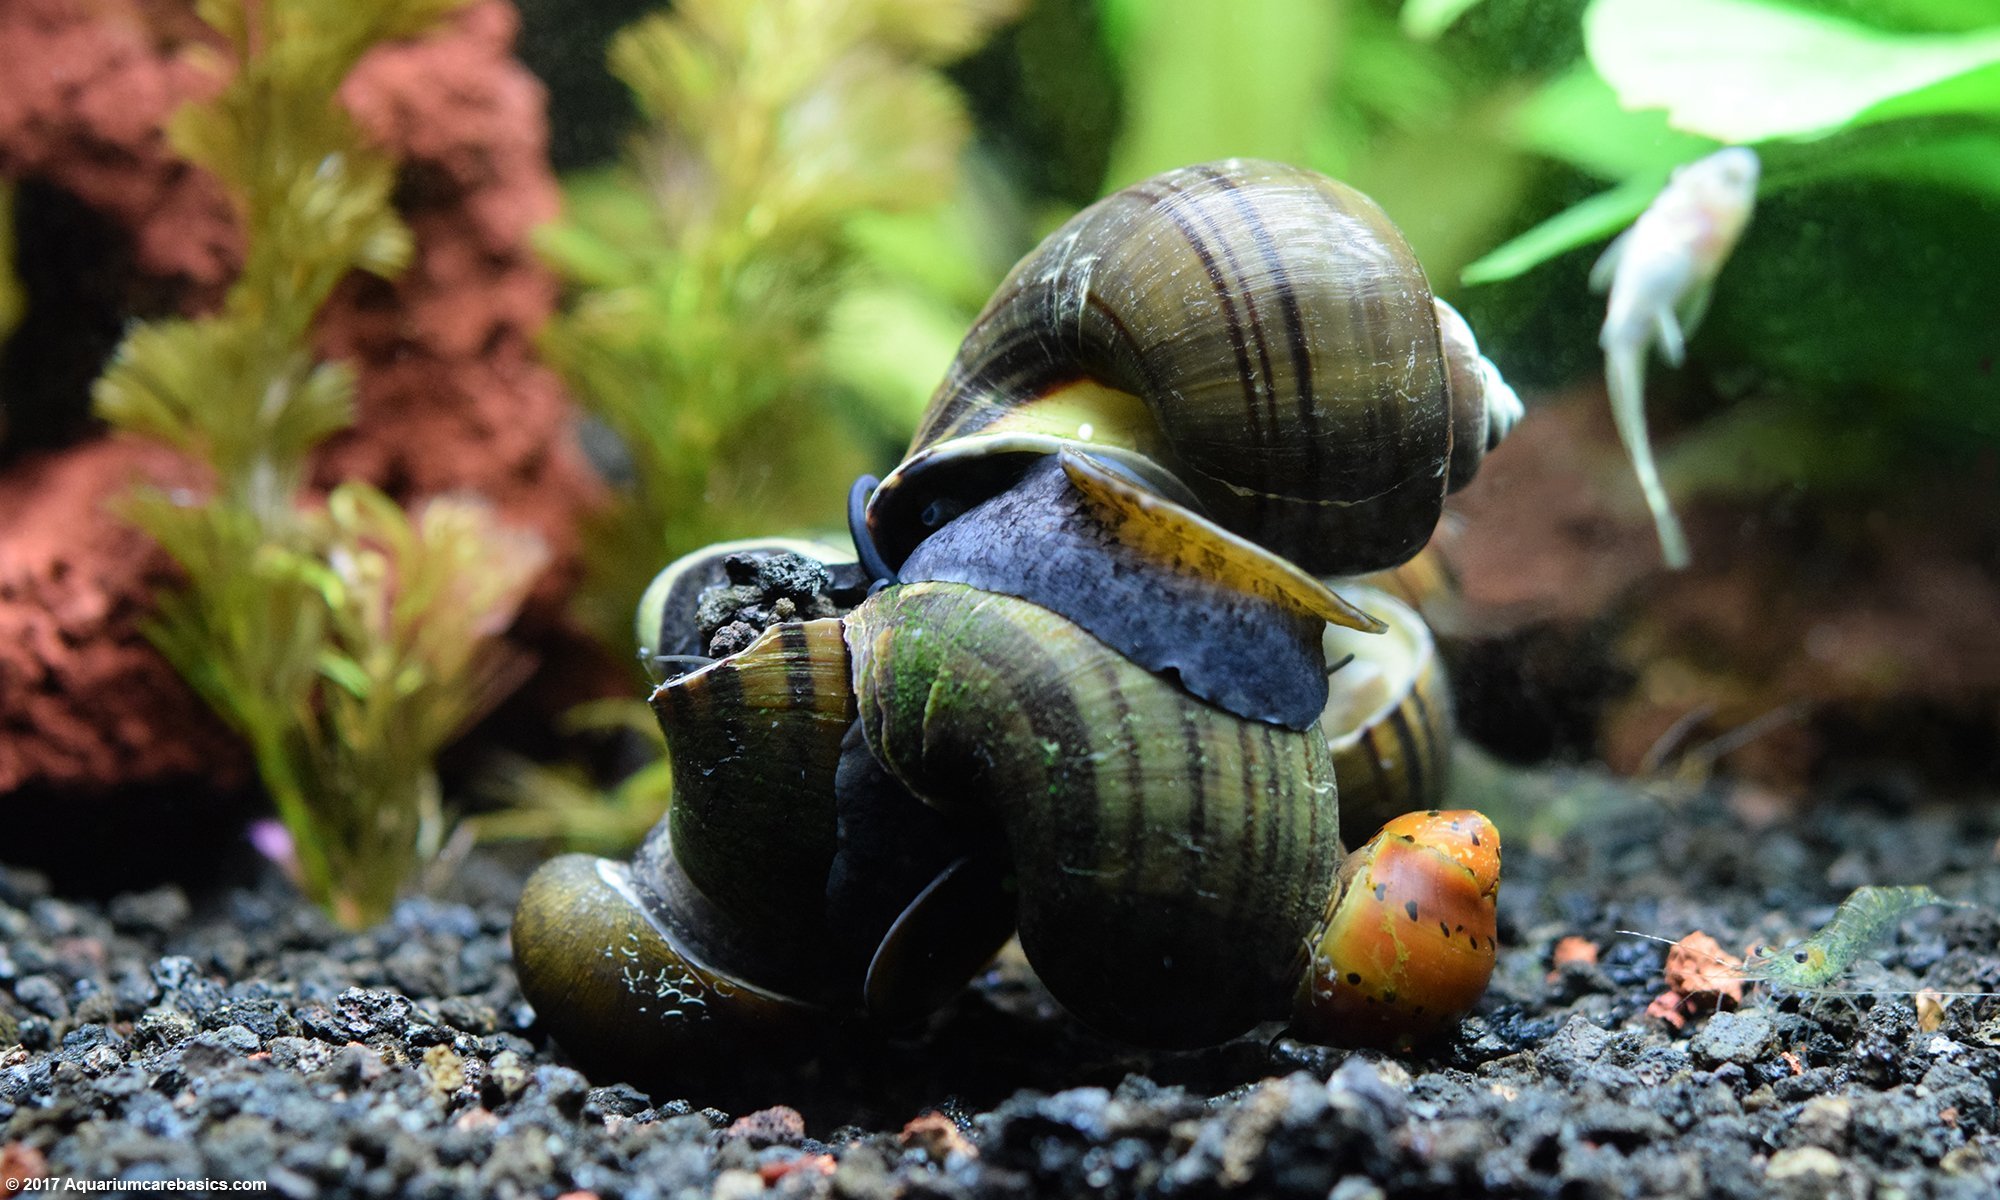 freshwater aquarium snails